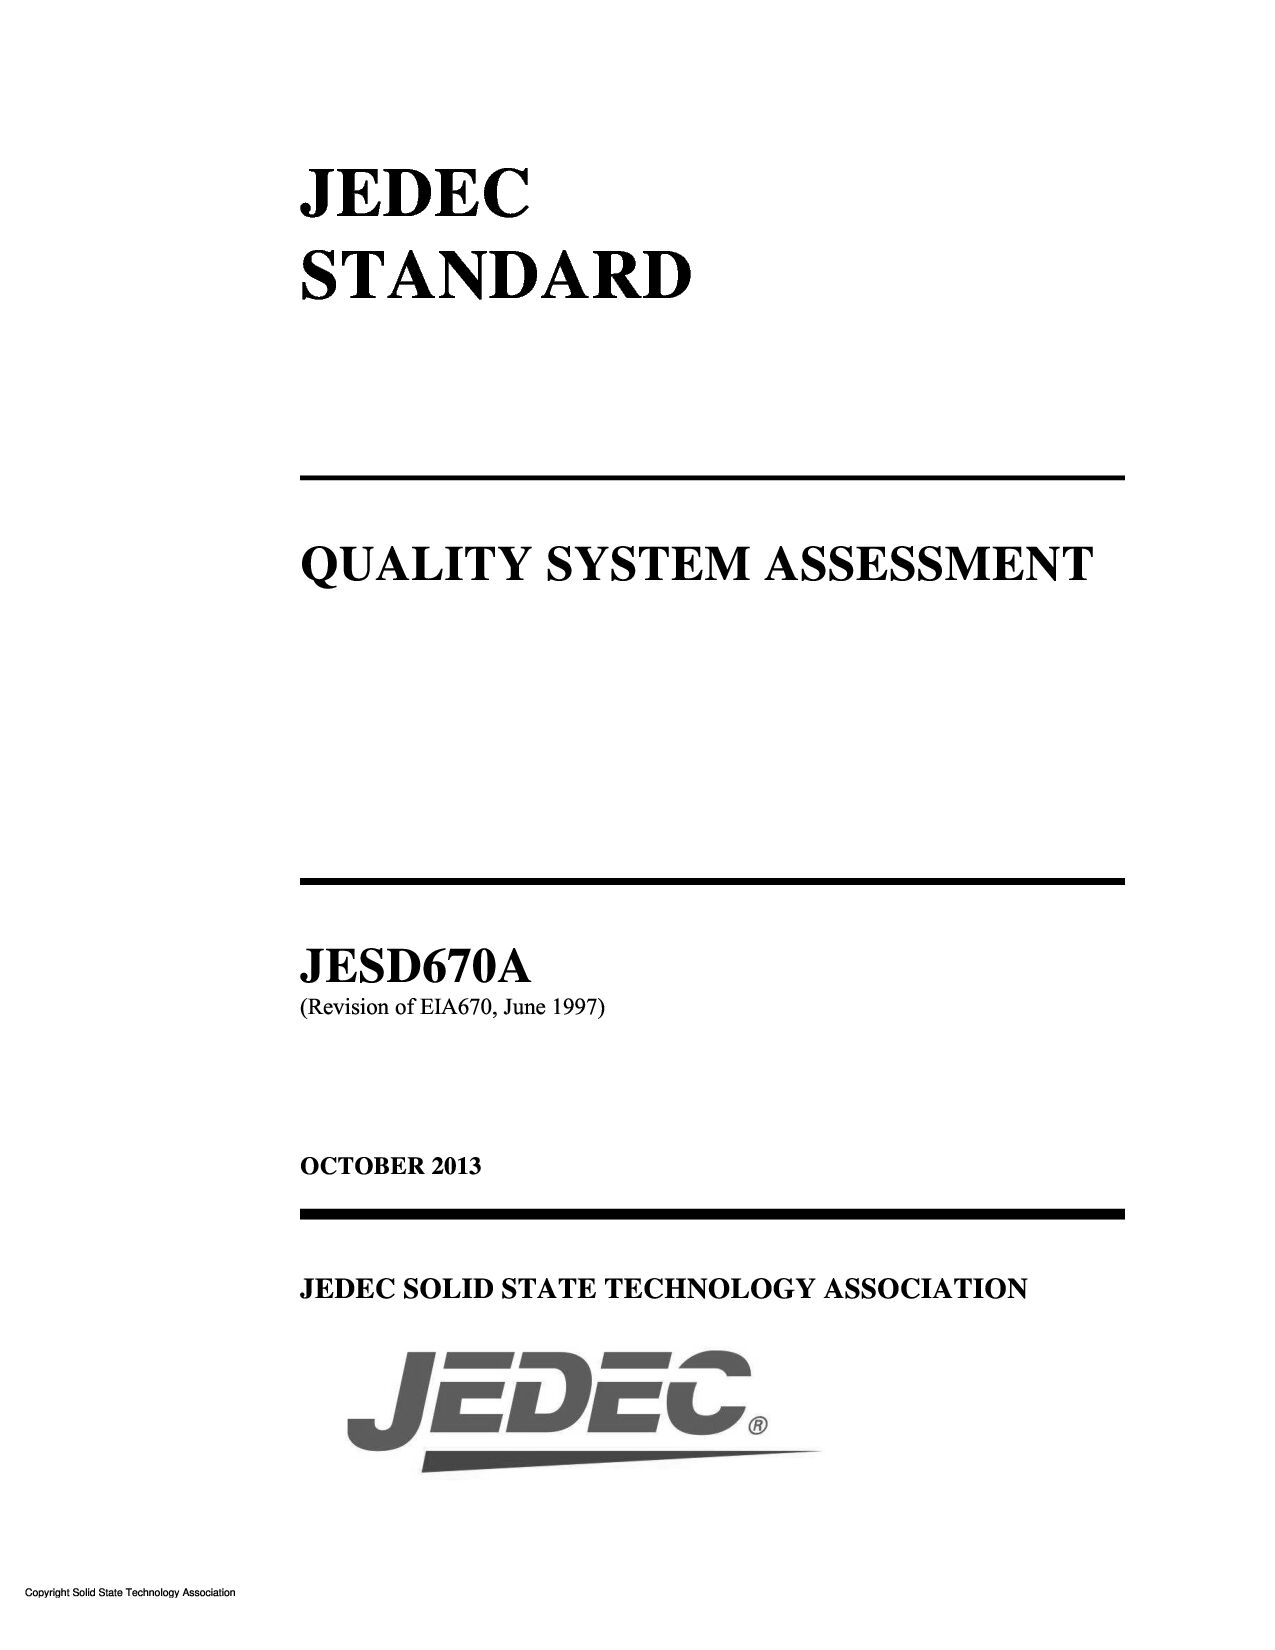 JEDEC JESD670A-2013